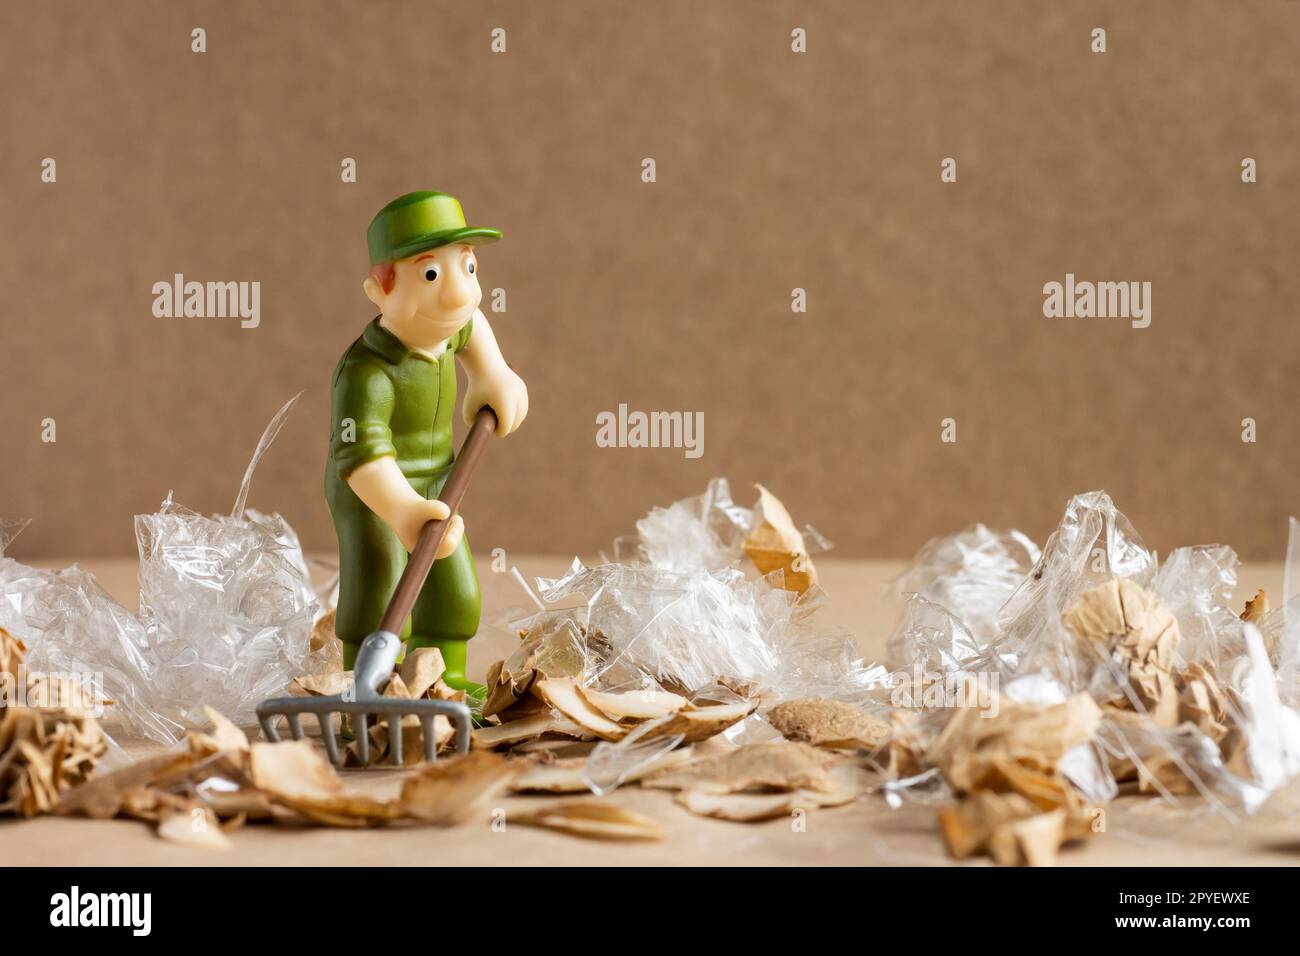 Ein Spielzeugmann im Arbeiteranzug macht eine große Menge Müll. Umweltschutz und Ökologiekonzept. Stockfoto